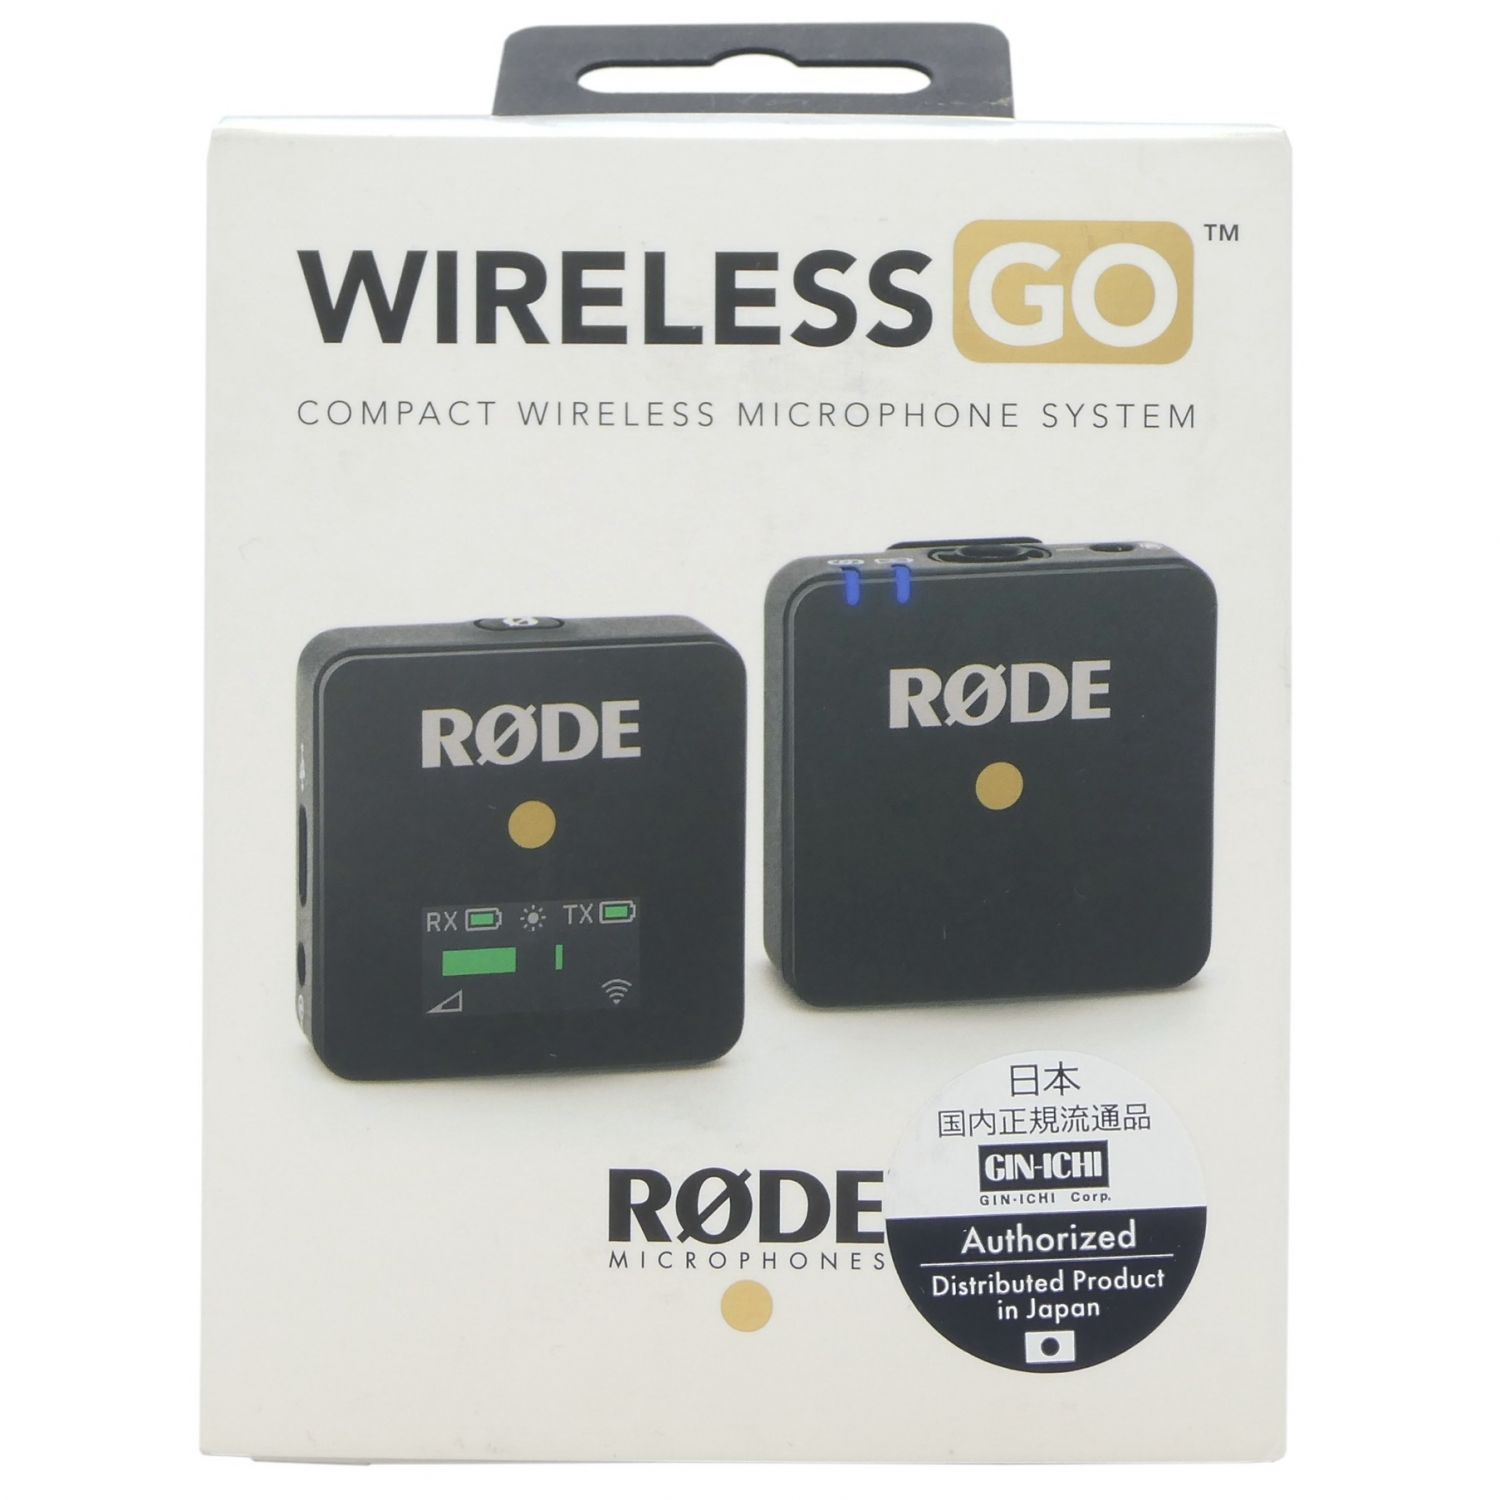 RODE (ロード) Wireless GO ワイヤレスマイクシステム ブラック